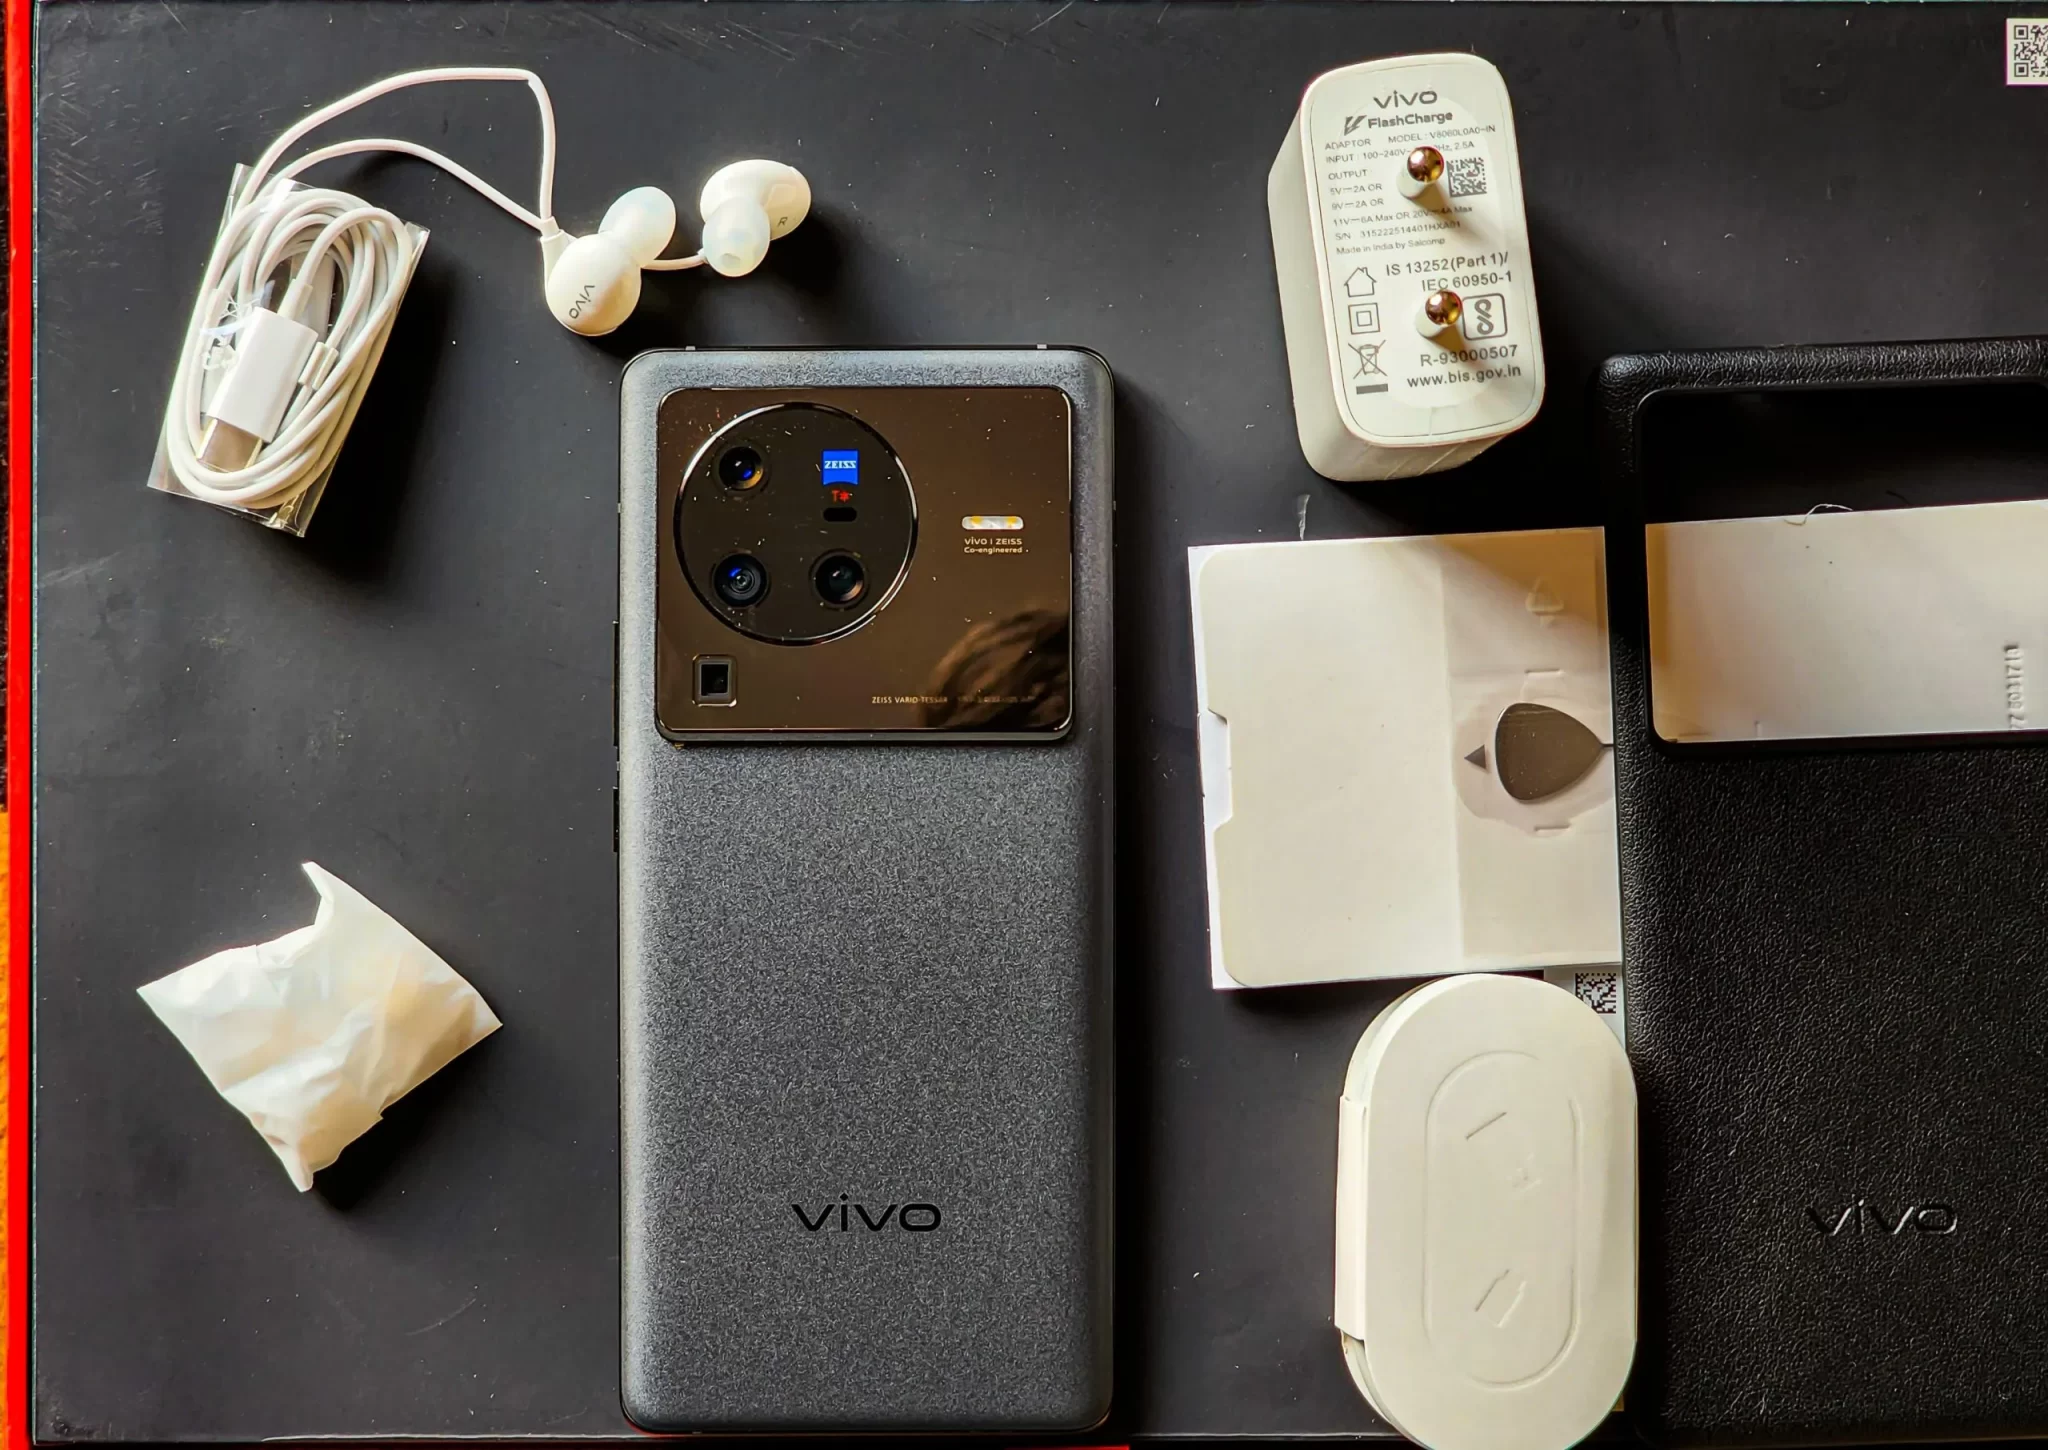 Vivo تواصل إبداعها بإطلاقها أحدث هواتفها الشبابية Vivo X80 Pro بإمكانيات "رائعة"